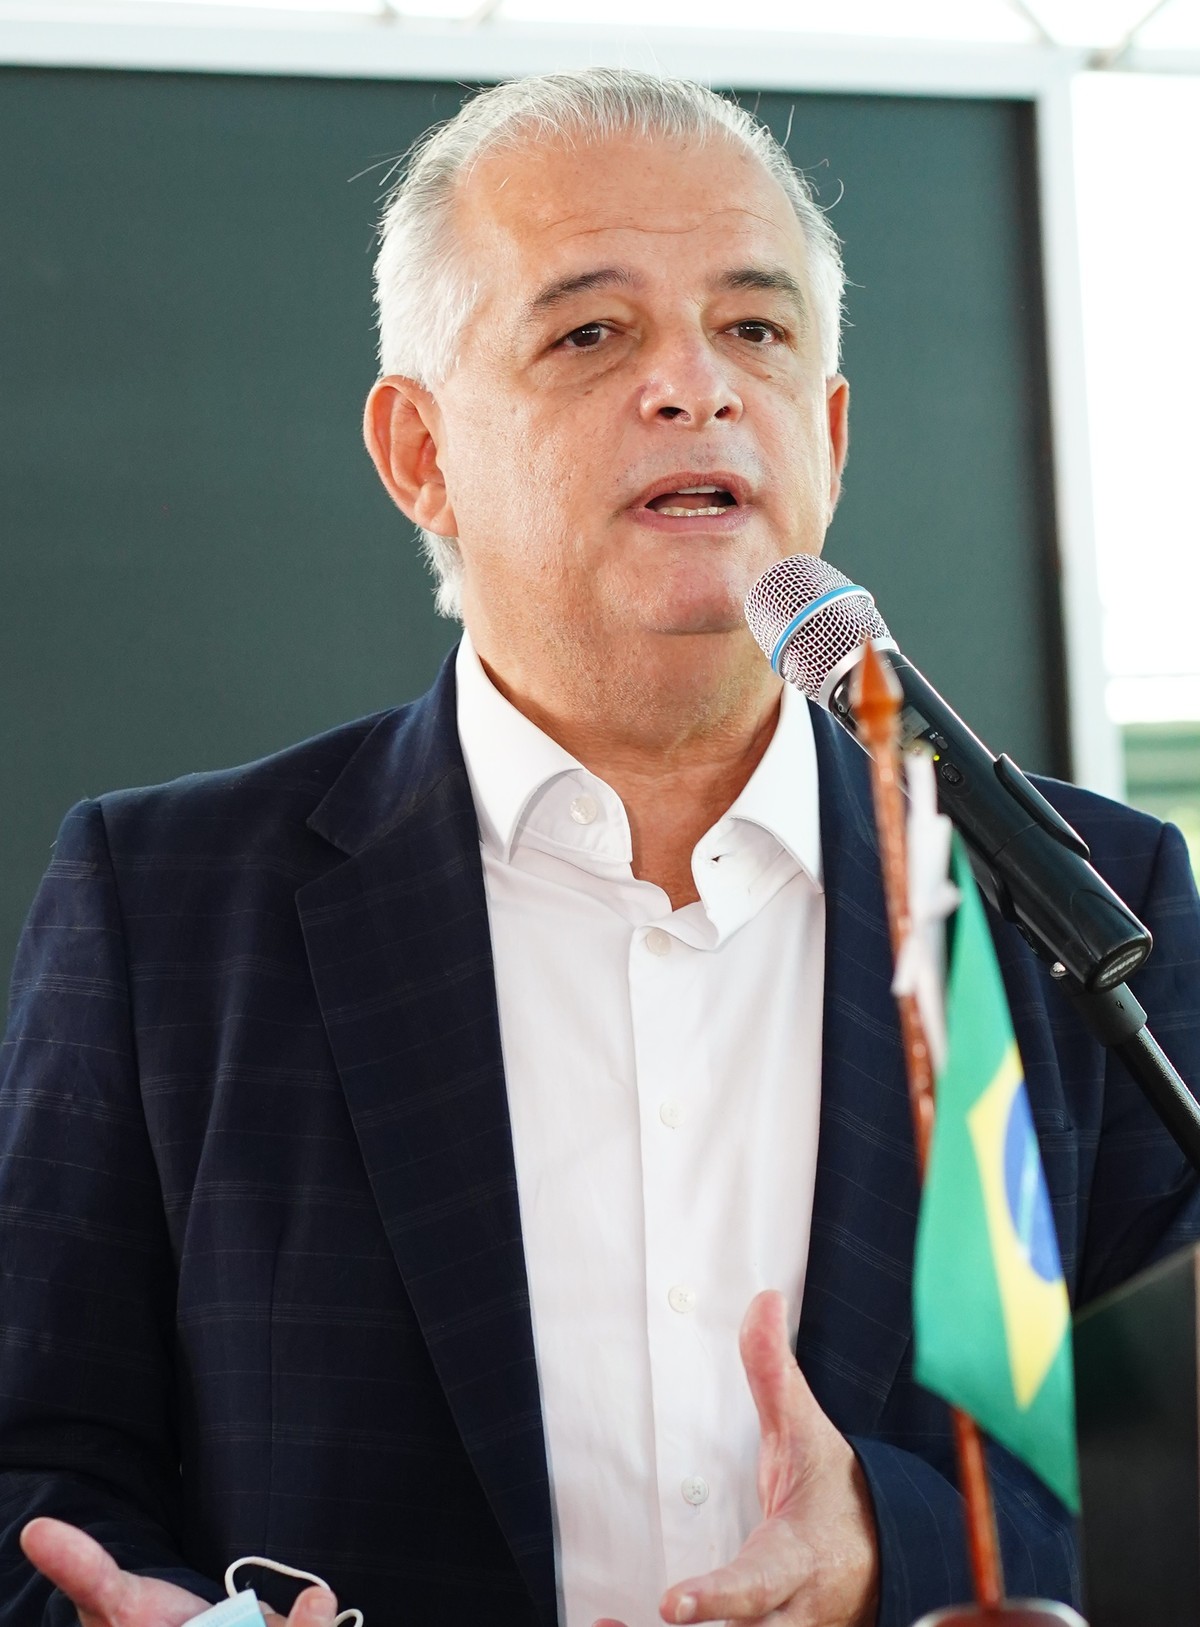 Márcio França prend en charge le ministère des Ports et Aéroports |  Brésil